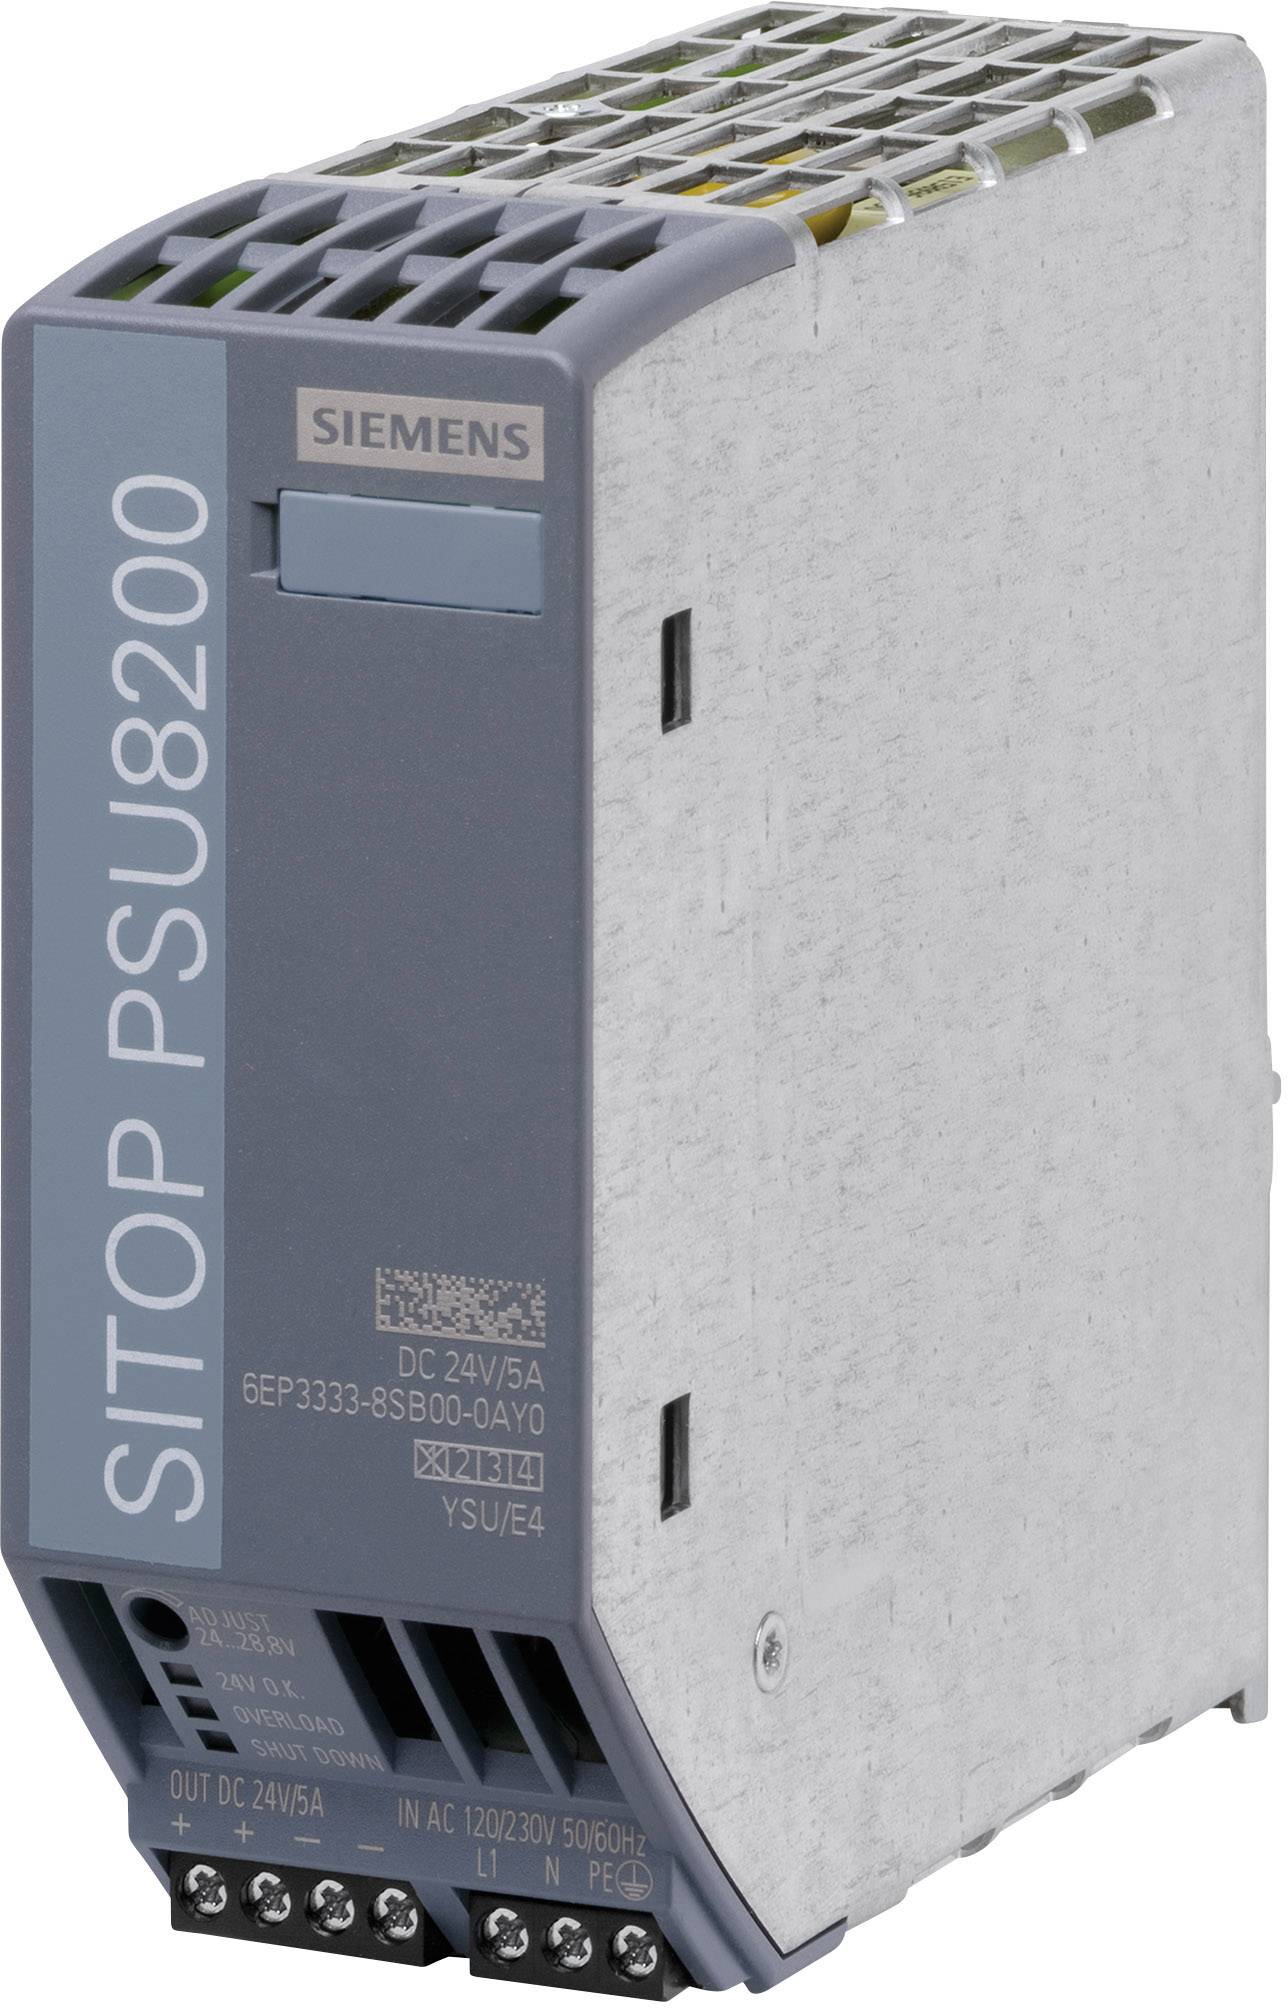 SIEMENS Hutschienen-Netzteil (DIN-Rail) Siemens SITOP PSU8200 24 V/5 A 24 V/DC 5 A 120 W 1 x